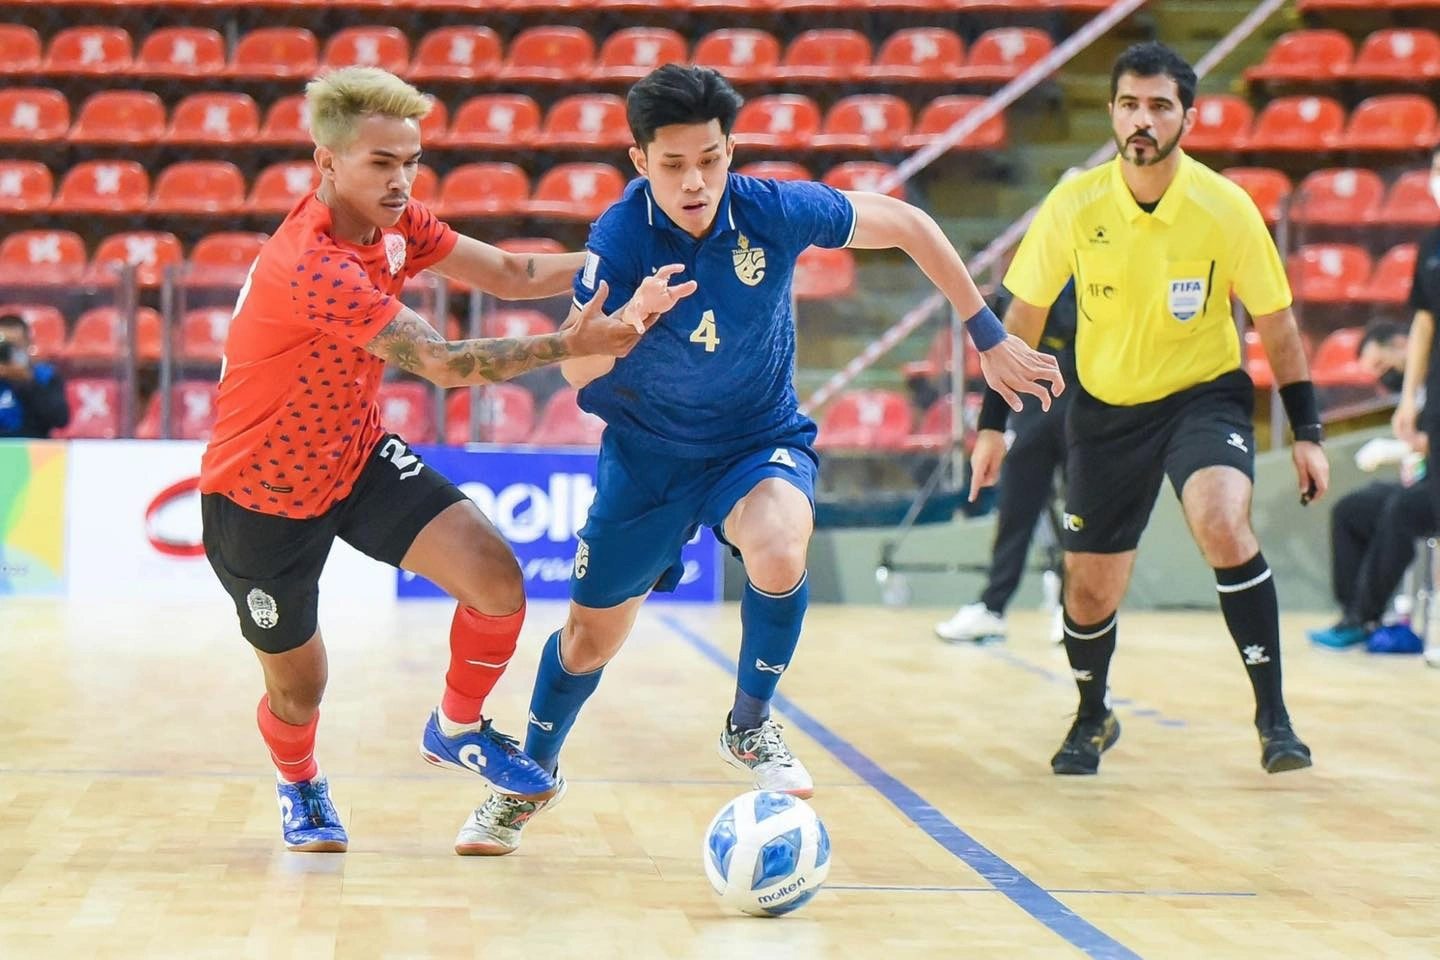 Campuchia thêm nhiều 'môn lạ' và bỏ 2 nội dung bóng đá tại SEA Games 32